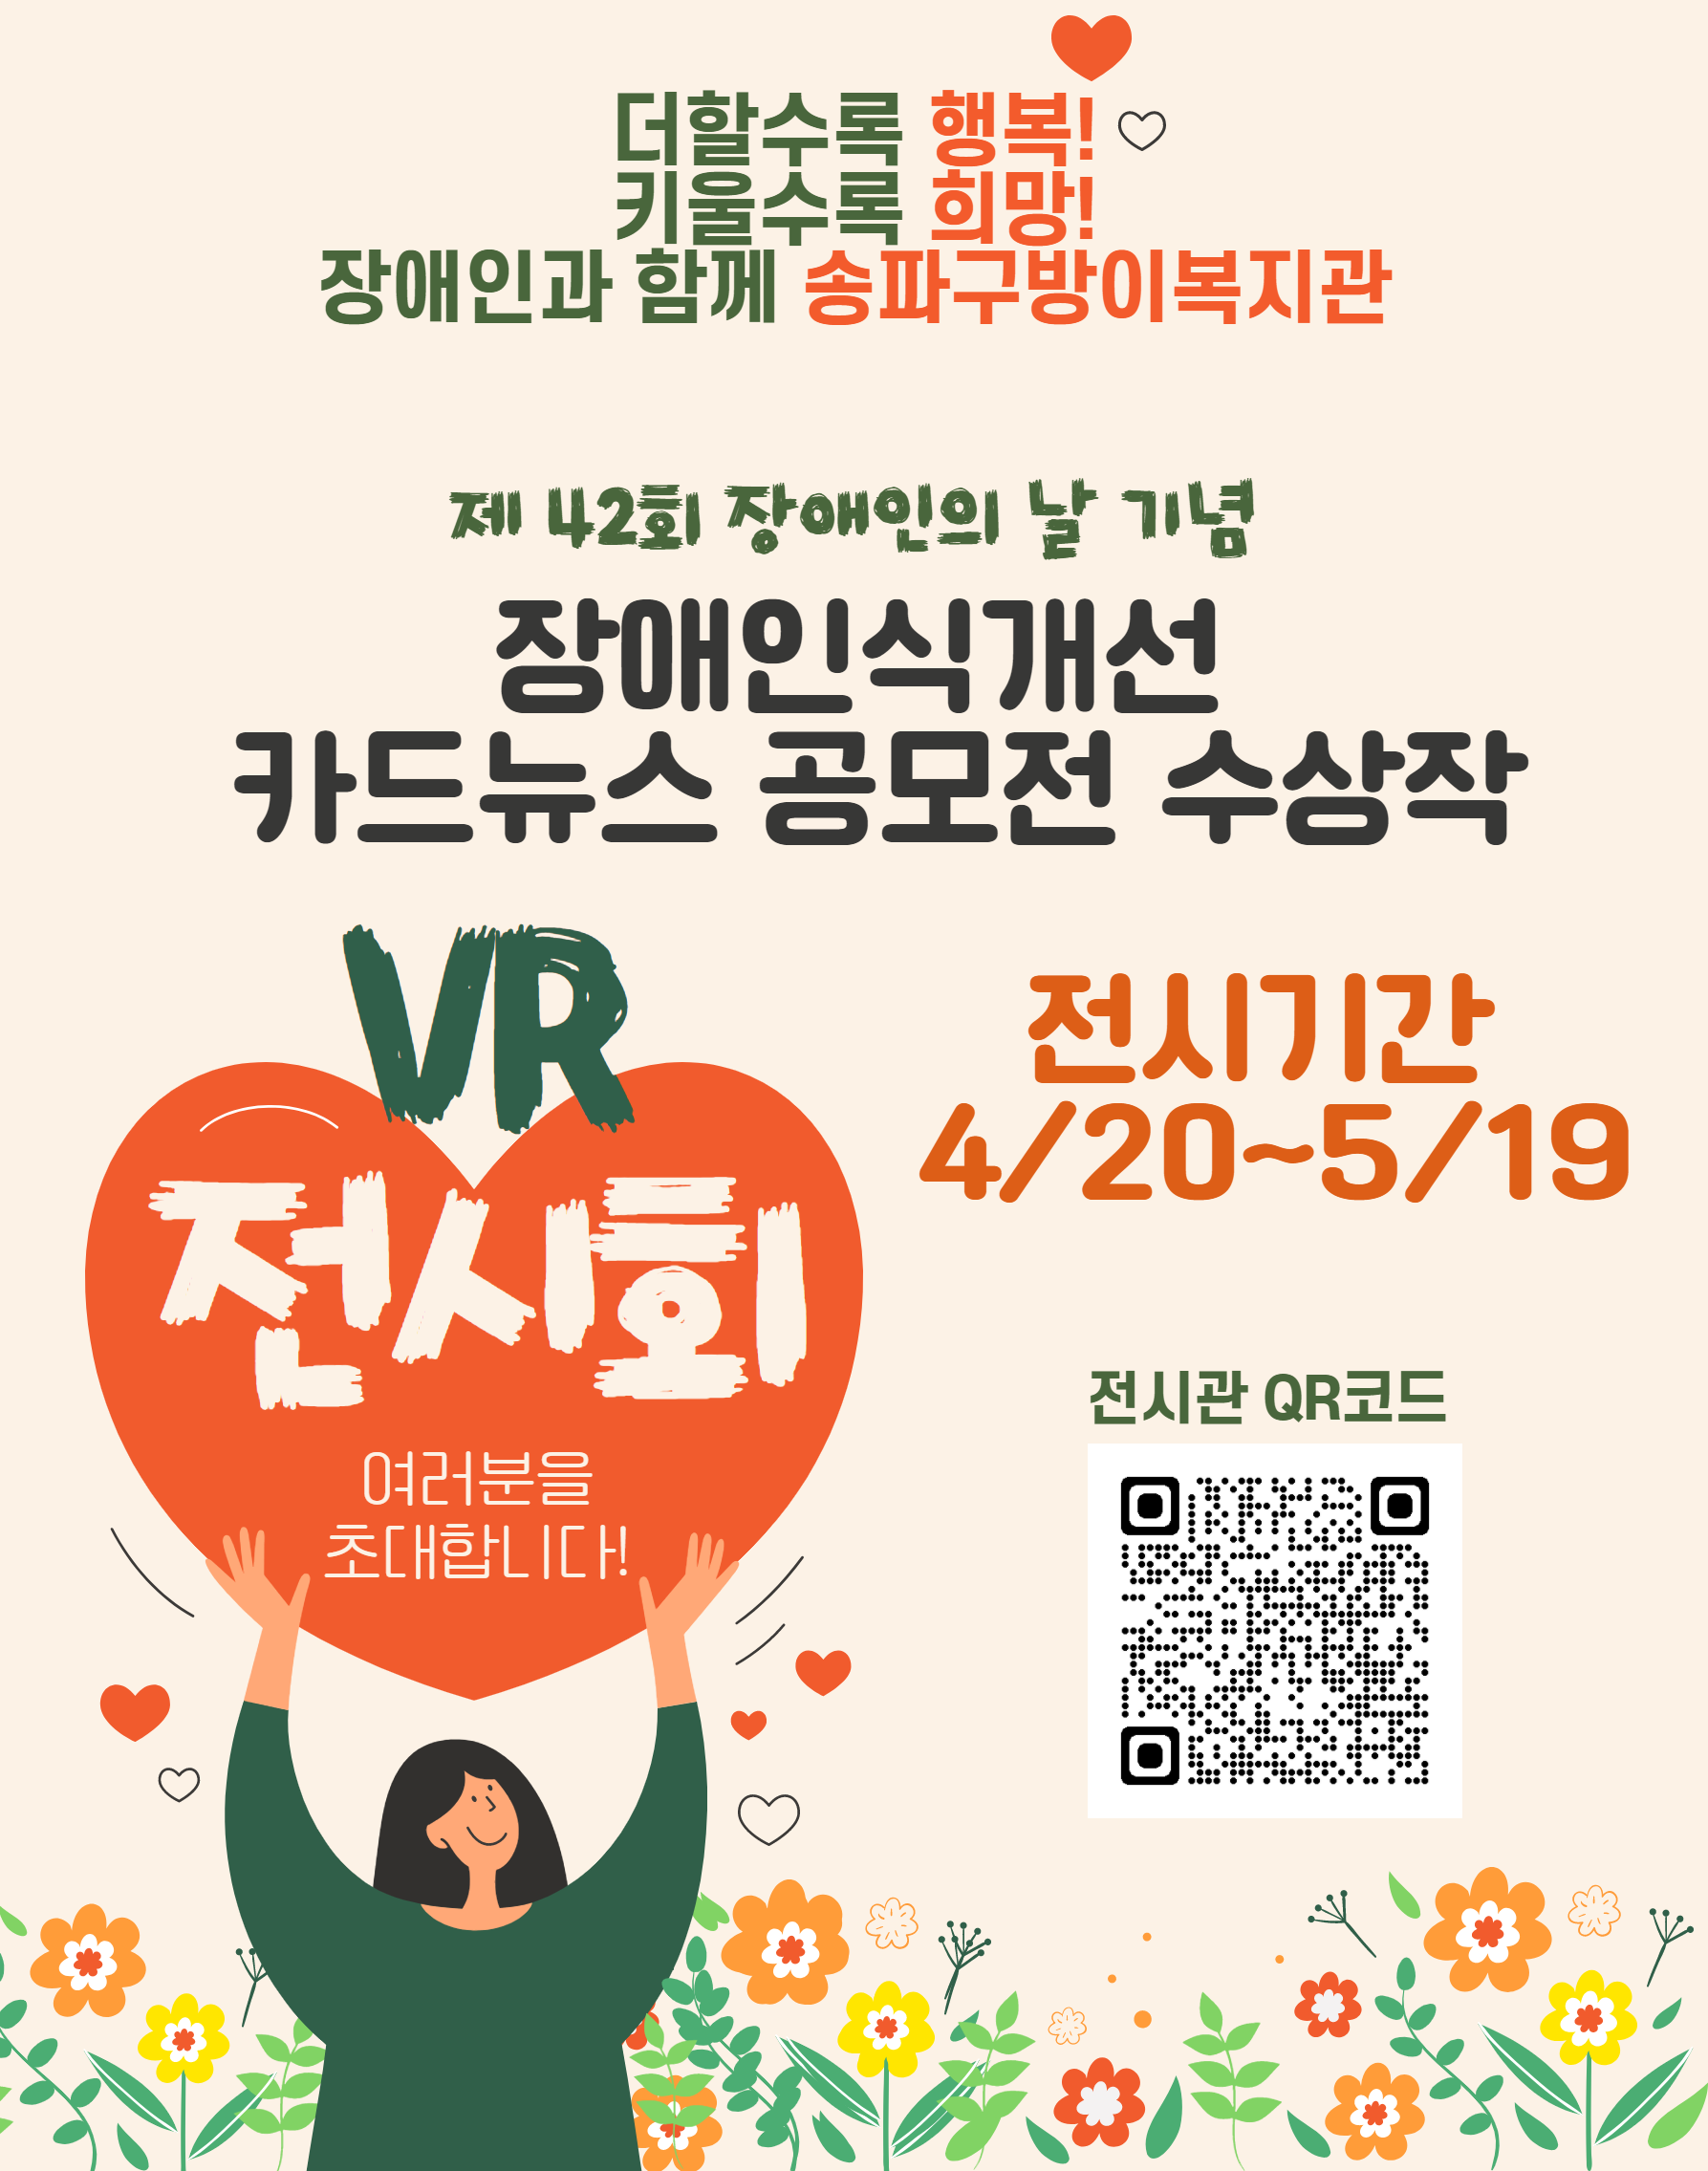 장애인식개선 카드뉴스 공모전 VR 전시회(소감)